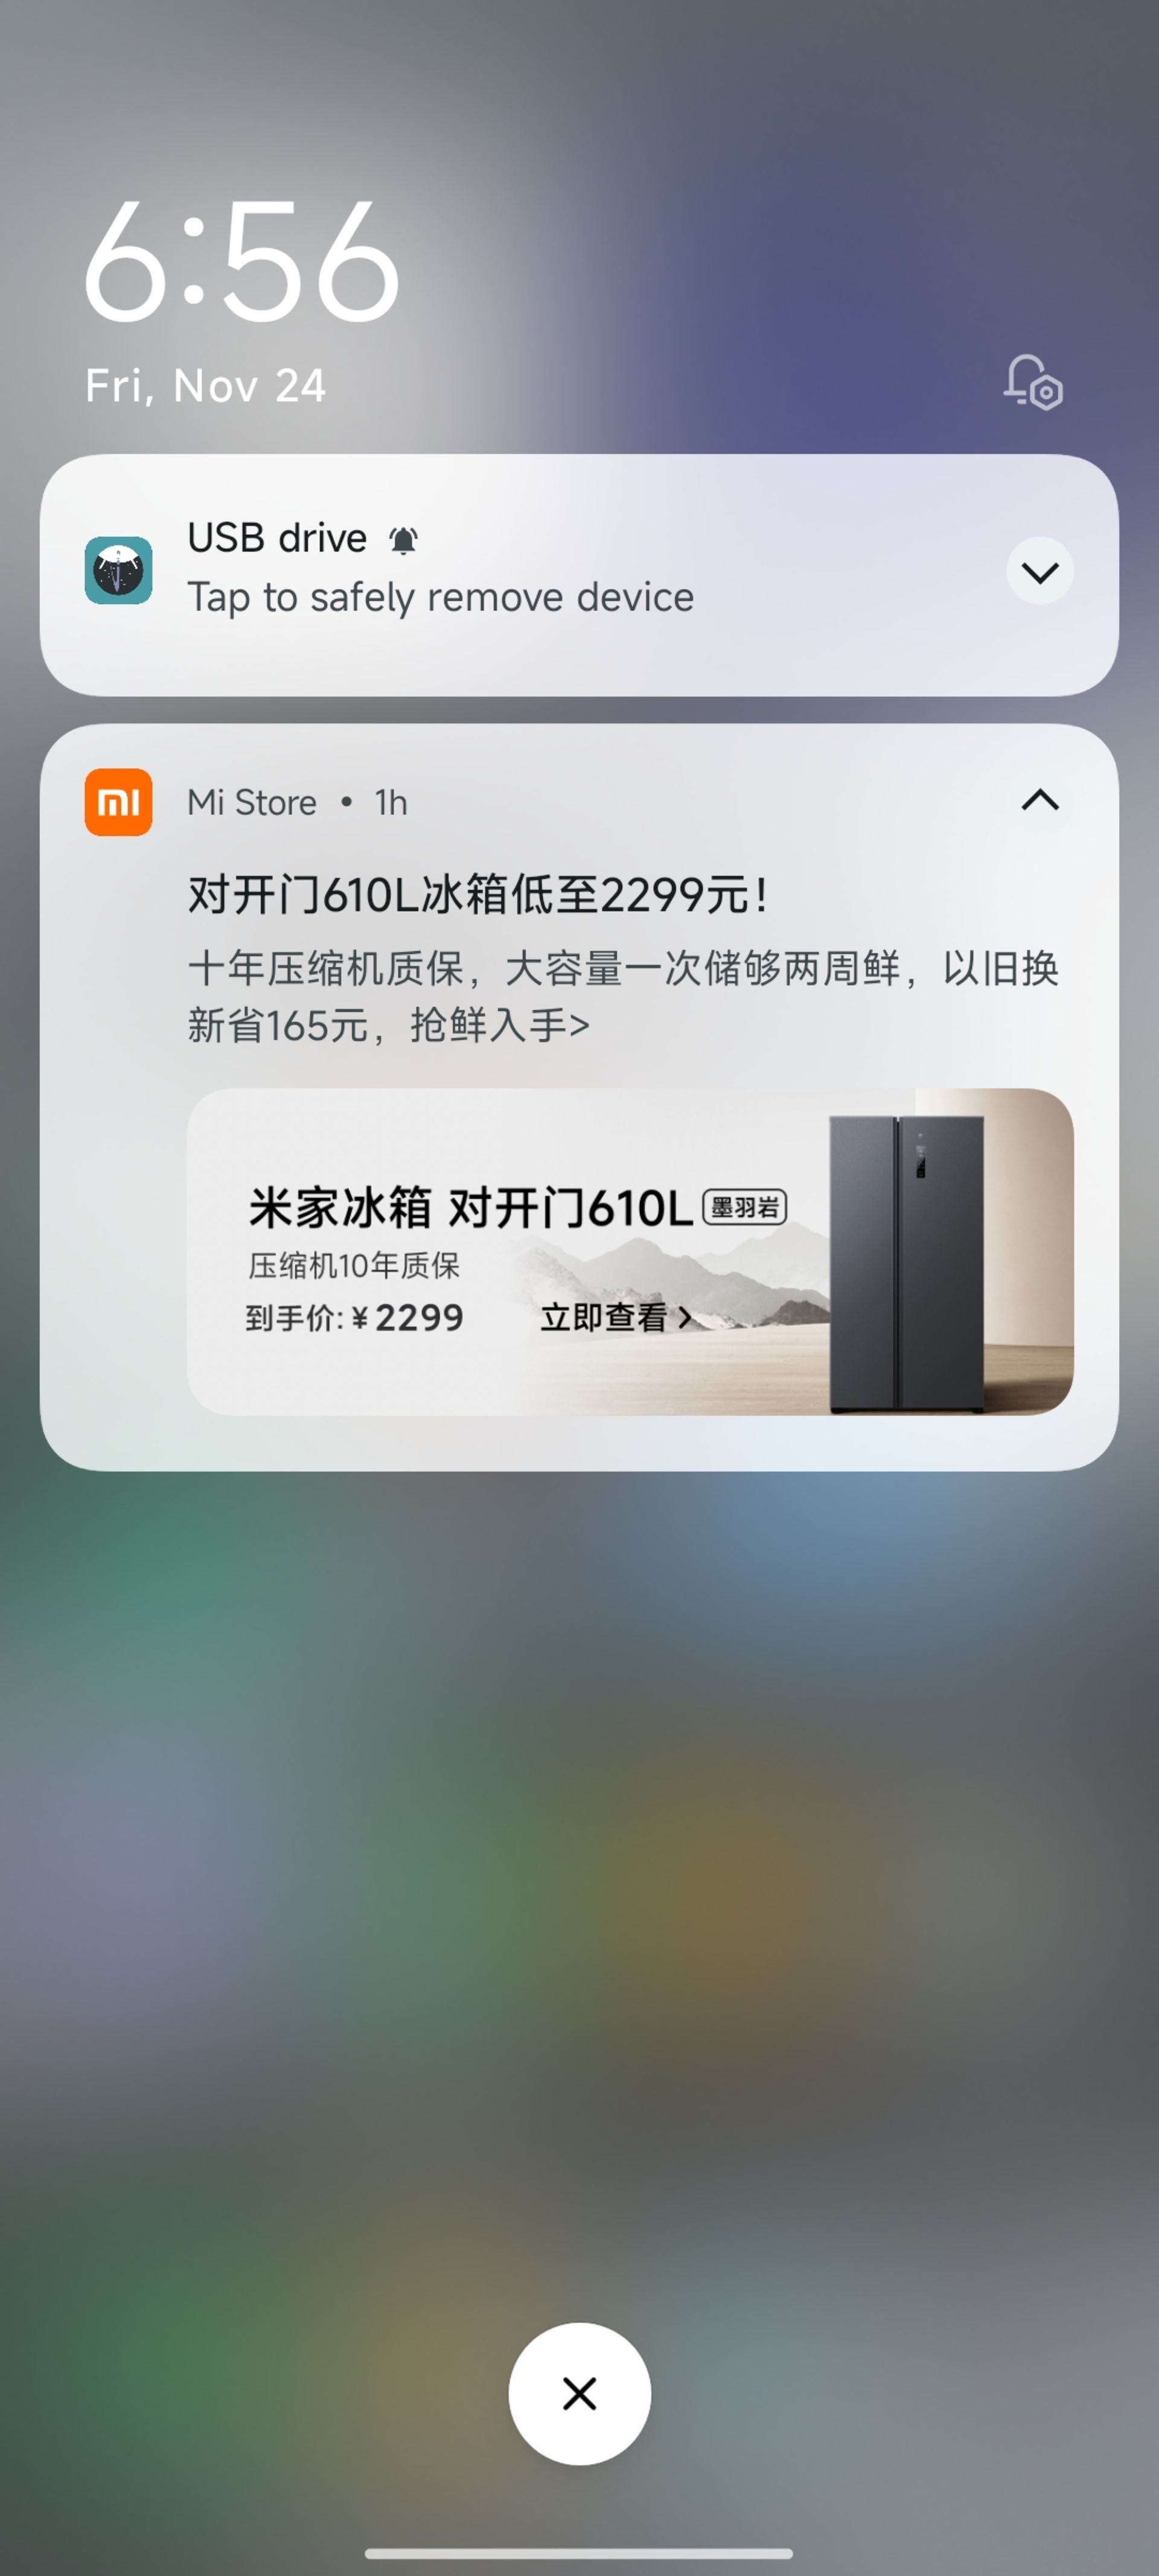 اعلانیه تبلیغاتی در نسخه چین HyperOS